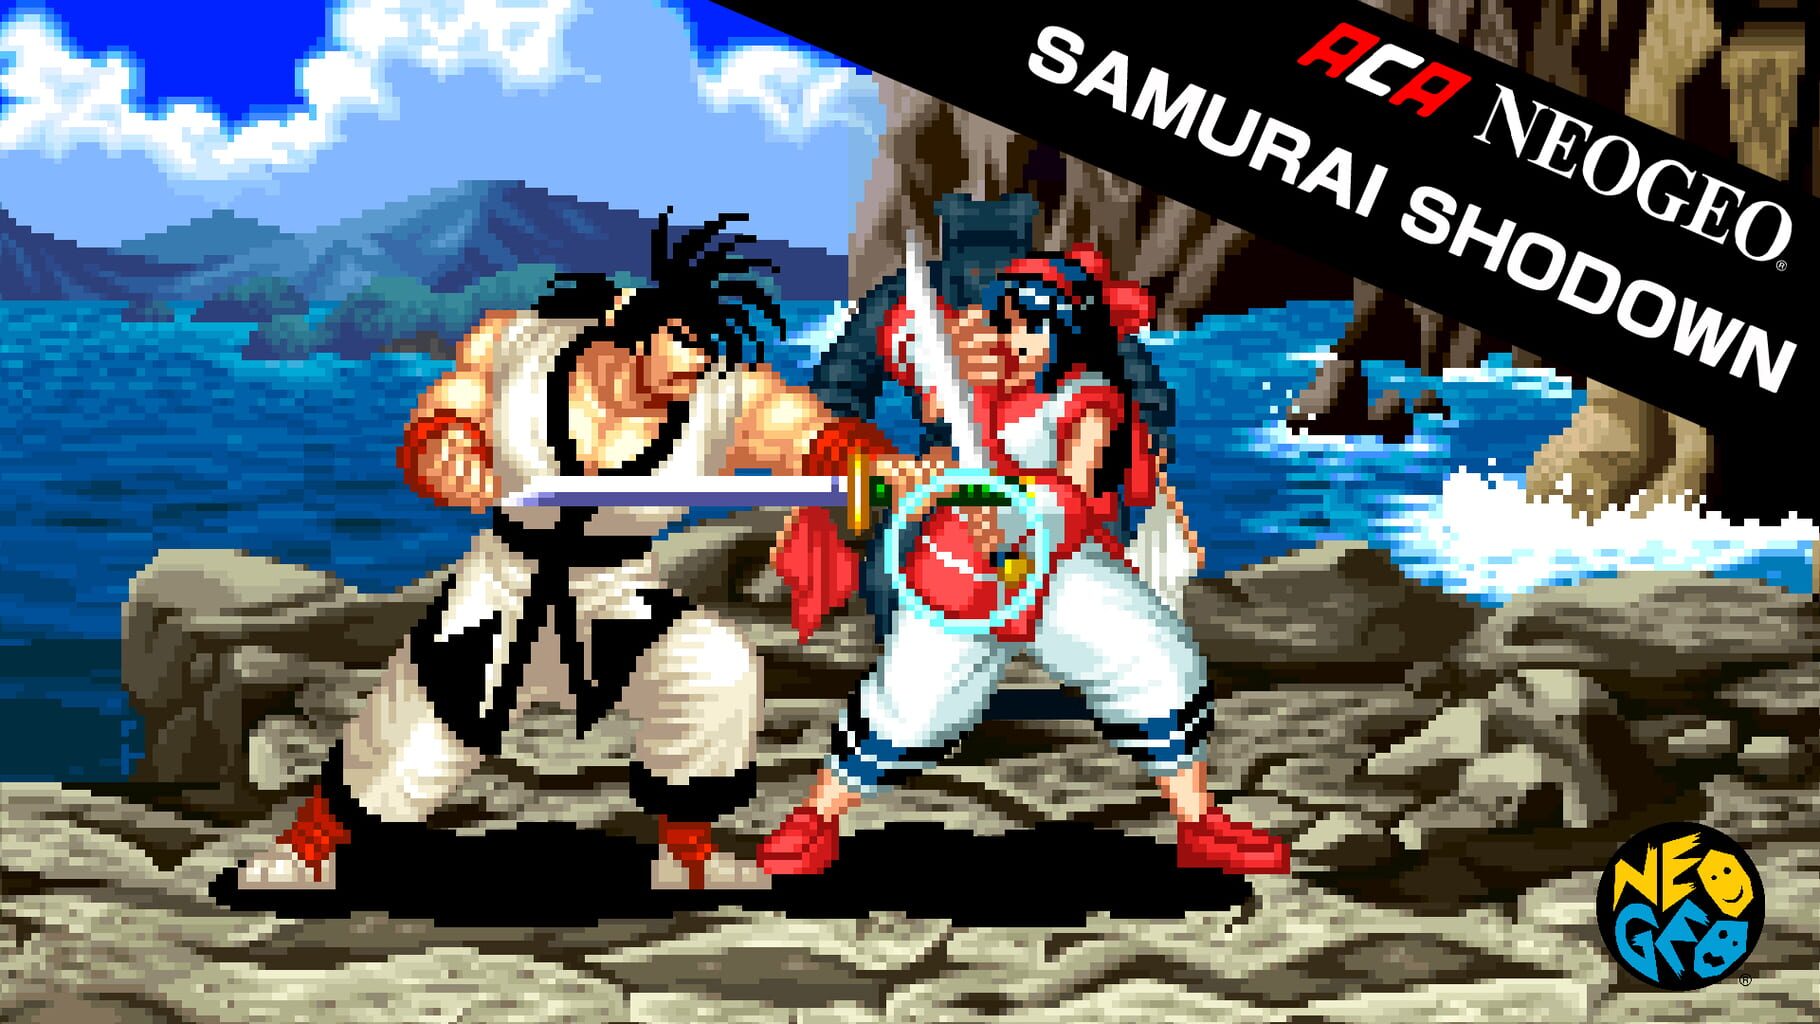 ACA Neo Geo: Samurai Shodown artwork